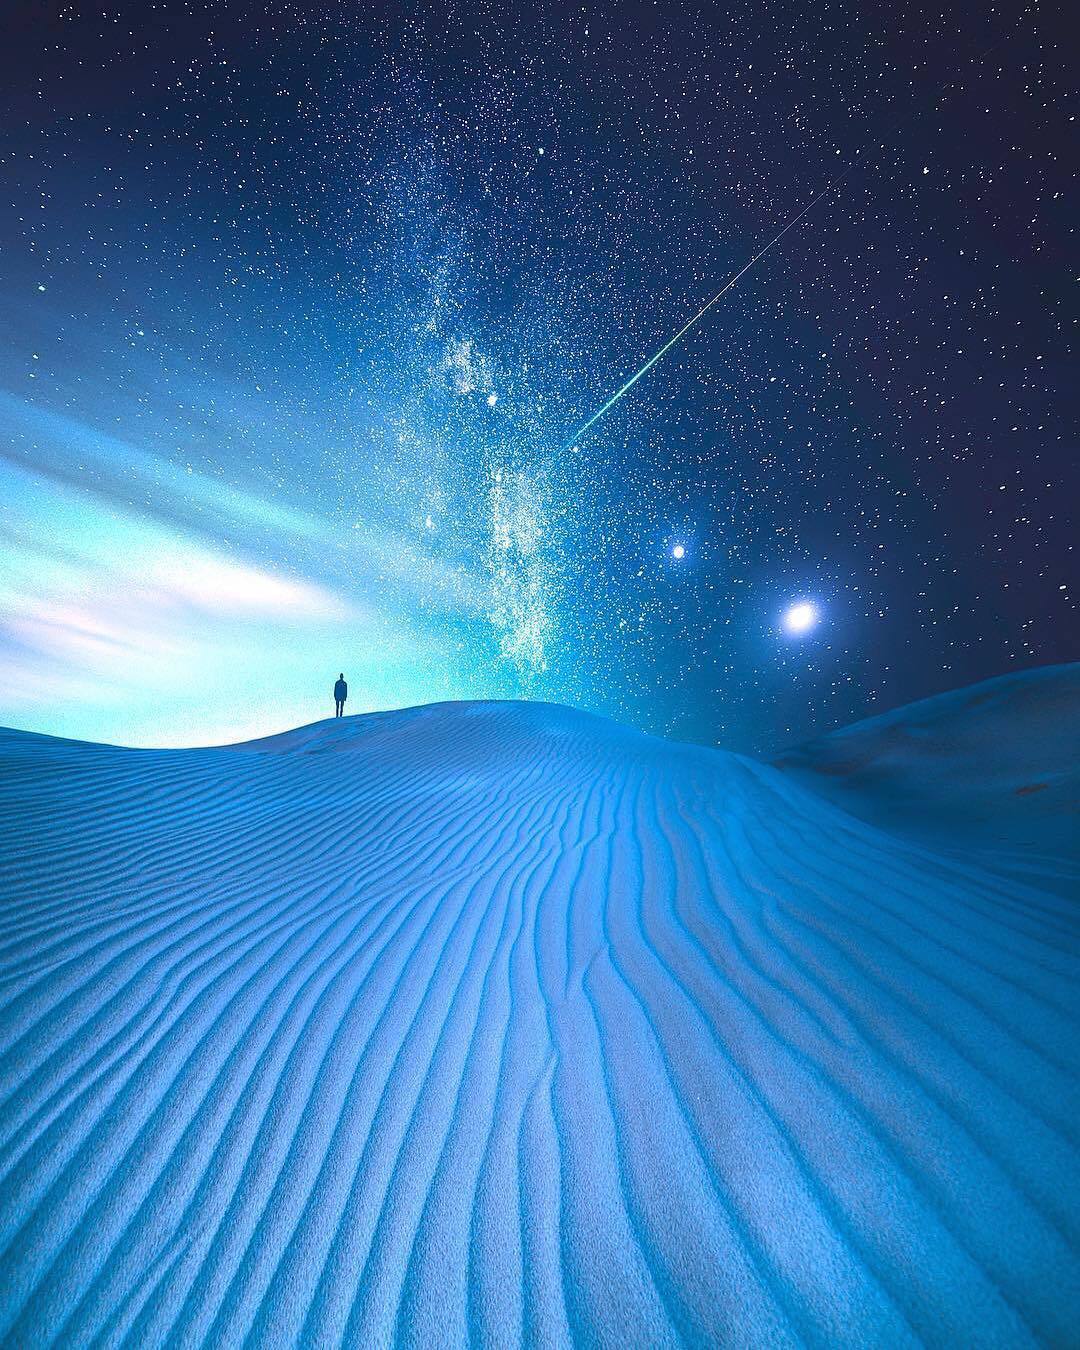  沙漠与星空，来自摄影师Jaxson Pohlman。 